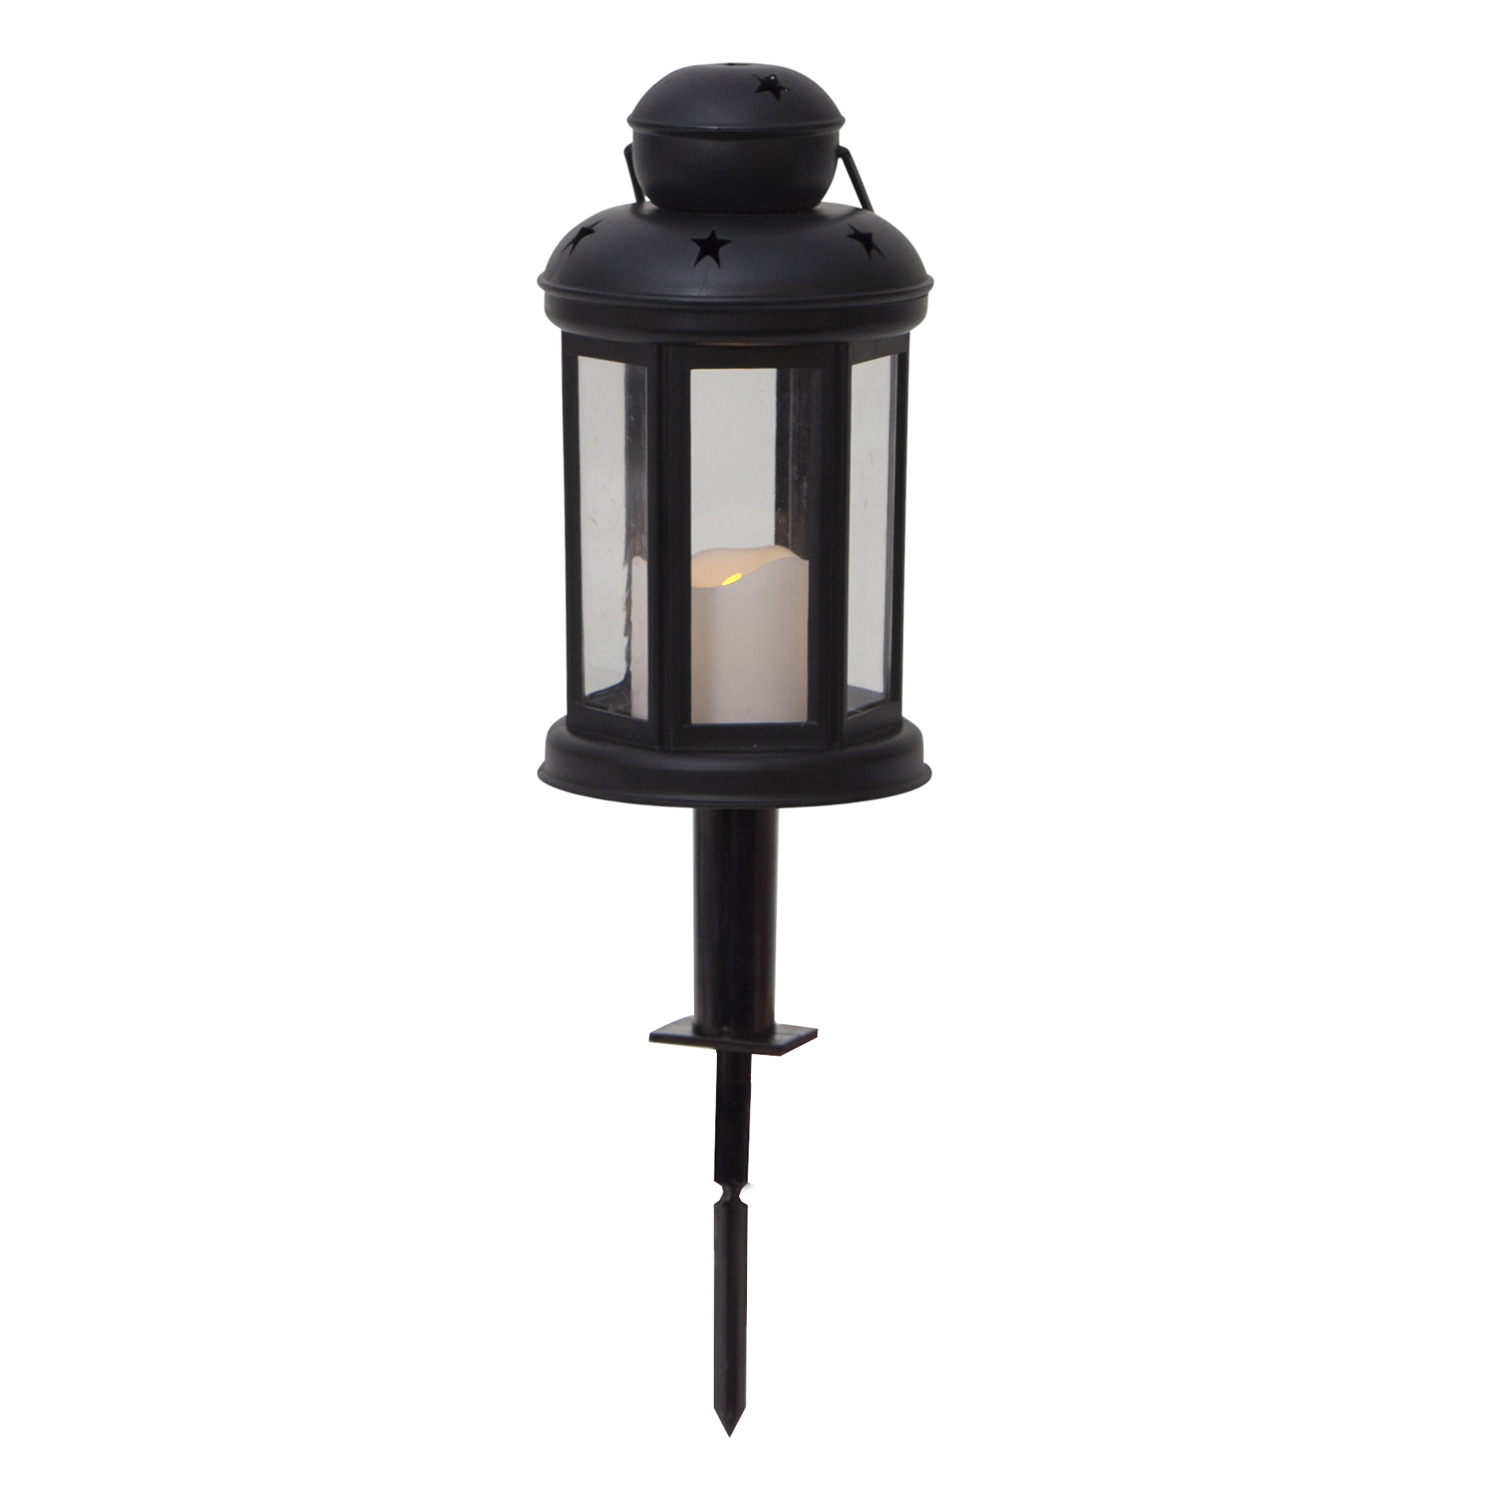 LED Laterne/Grablicht mit Kerze - gelbe LED - Erdspieß - Timer - H: 18cm, D: 10cm - schwarz